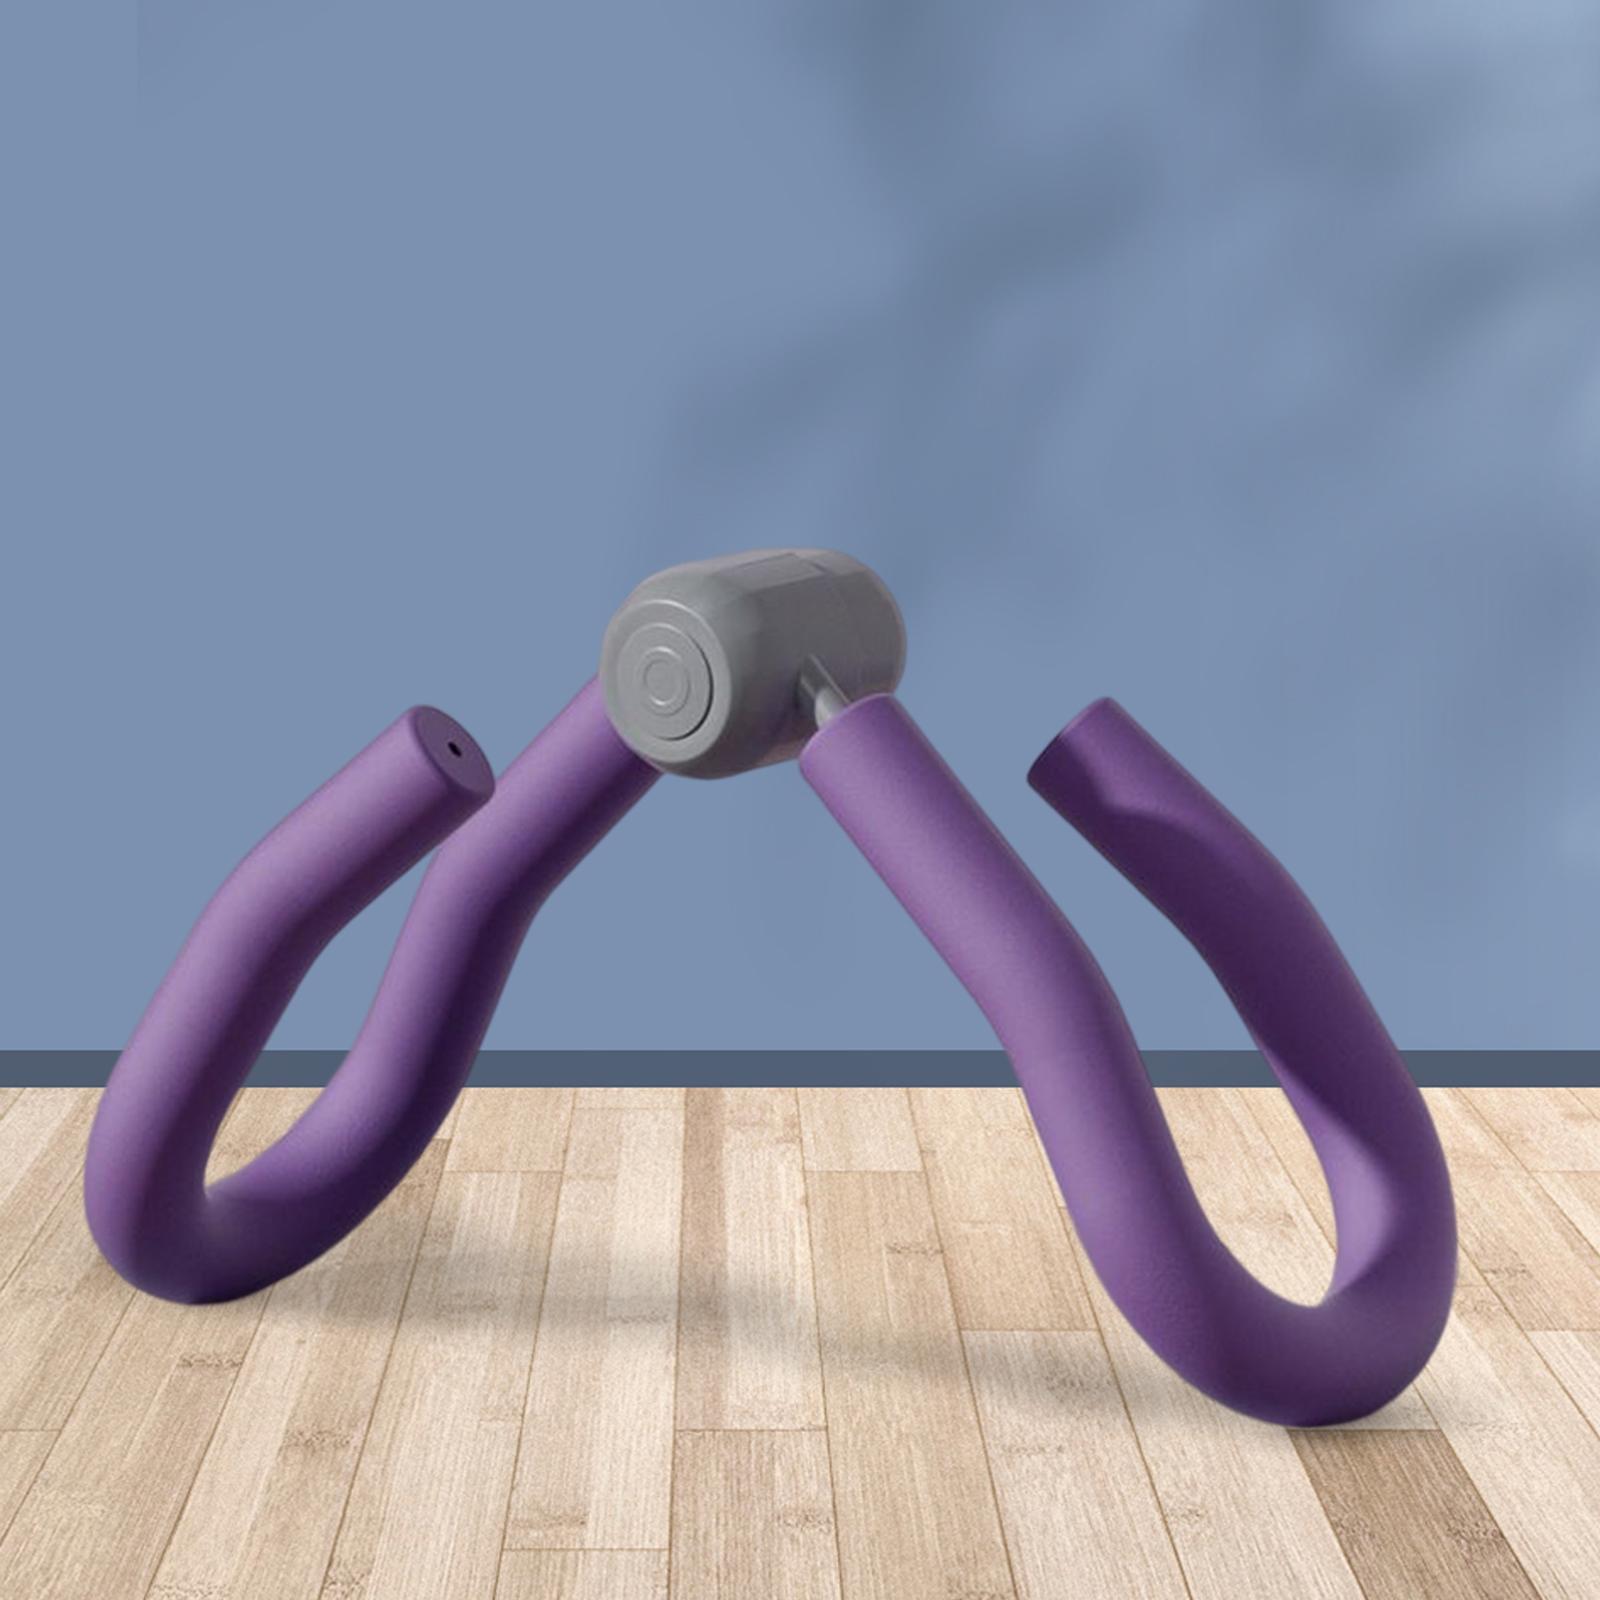 Thigh Exerciser Floor Muscle Exercise Equipment Strengthening for Fitness Purple